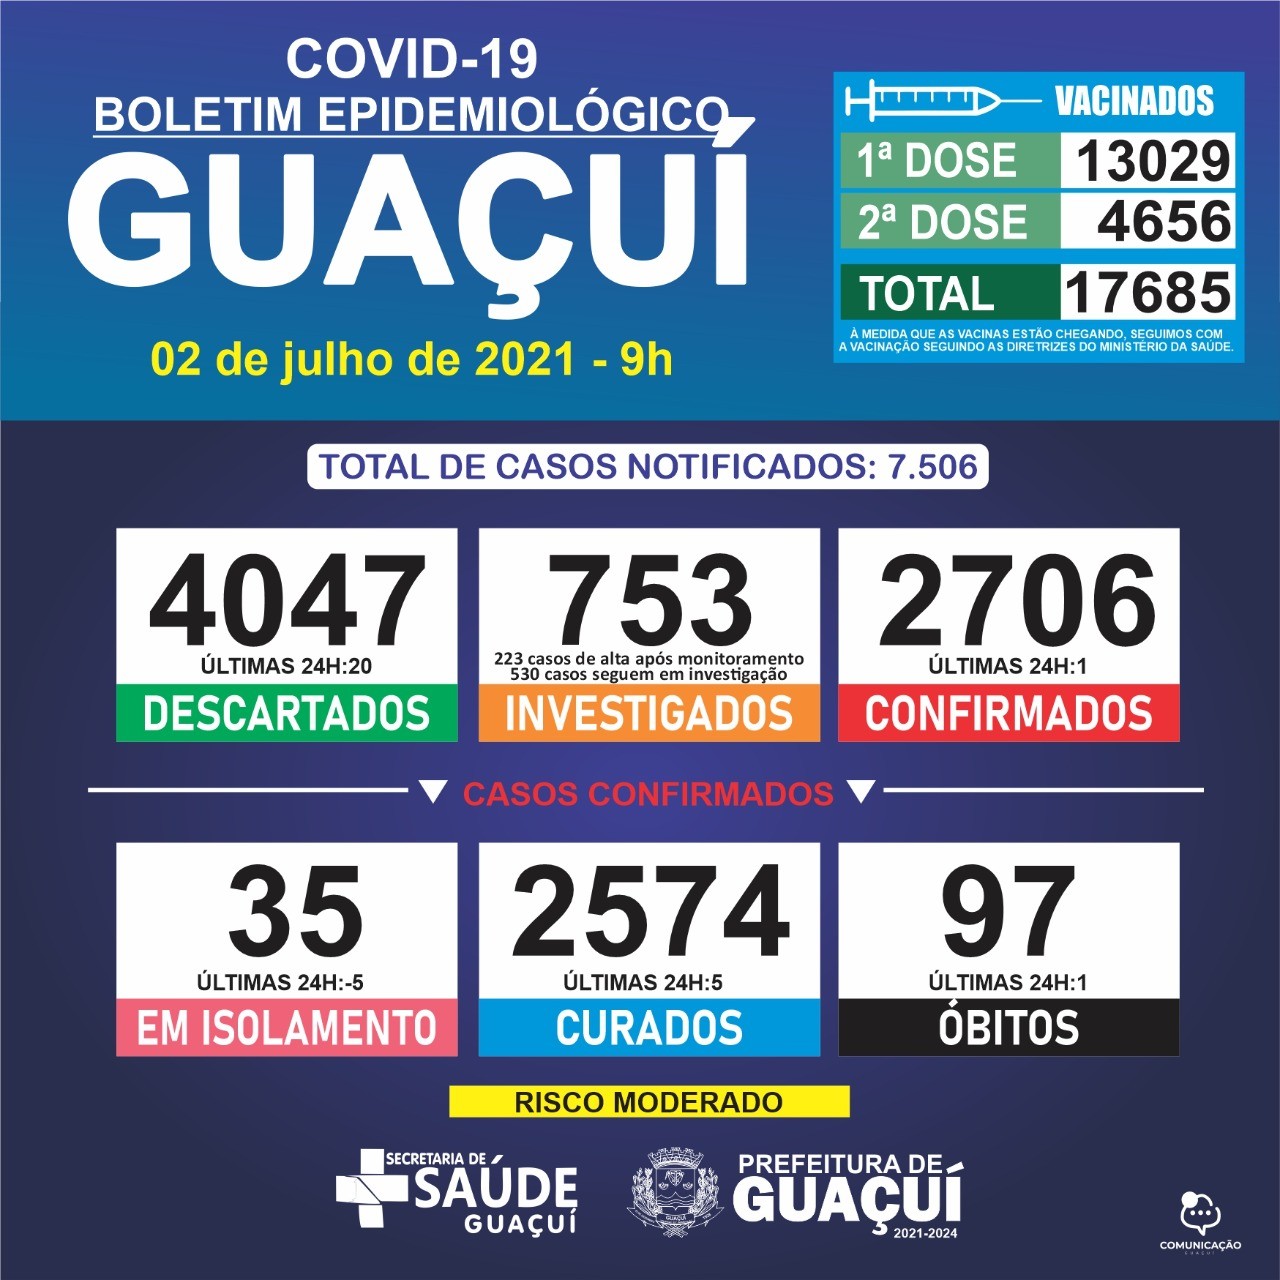 Boletim Epidemiológico 02/07/21: Guaçuí registra 1 óbito, 1 caso confirmado e 5 curados nas últimas 24 horas